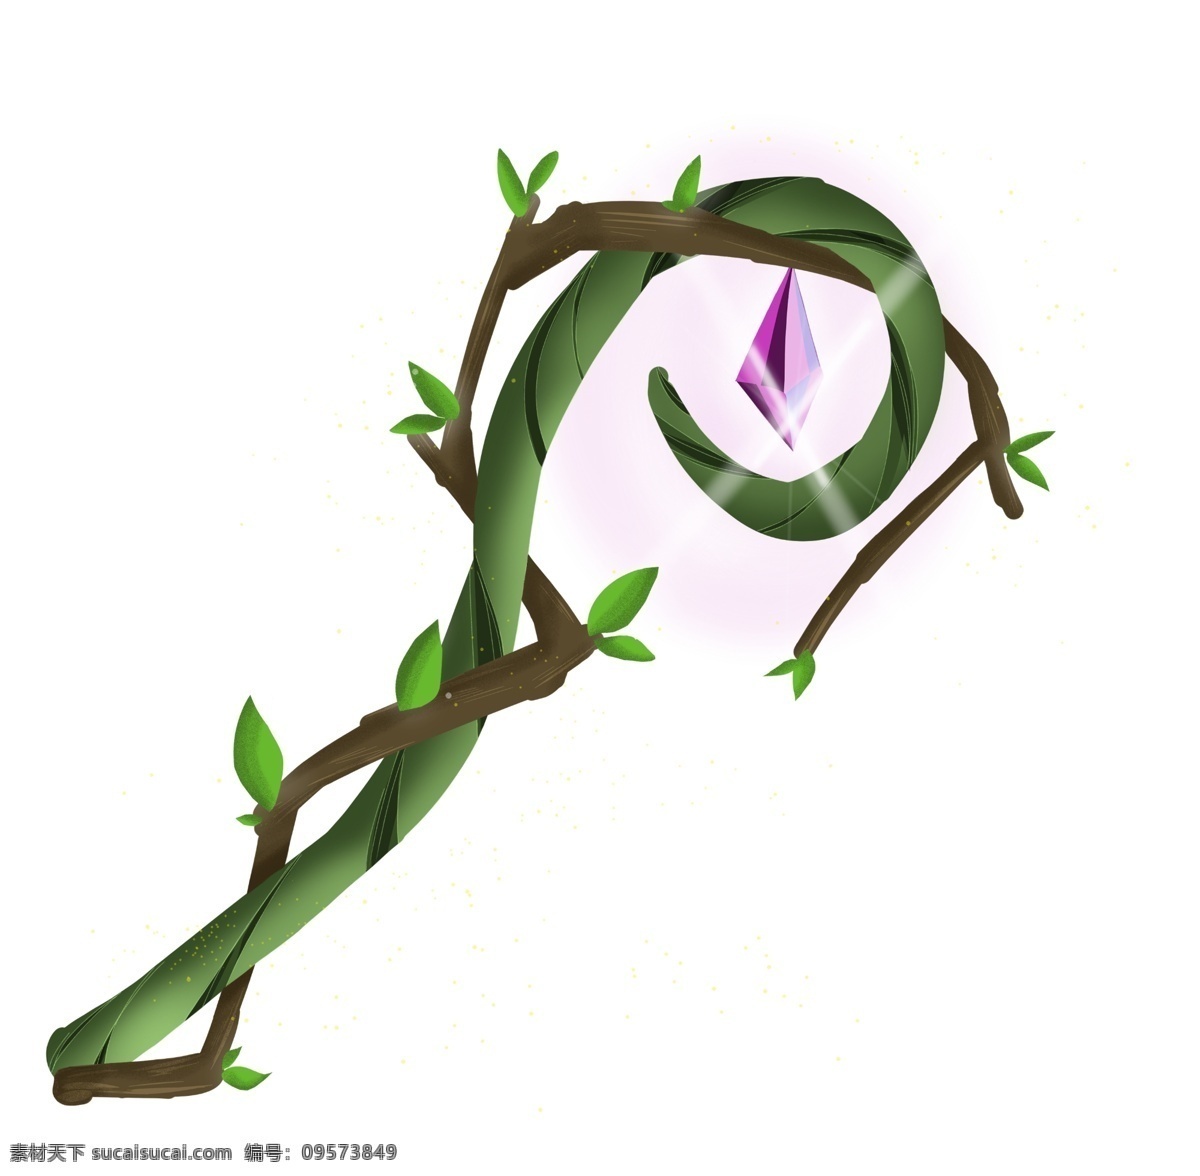 游戏 钻石 装饰 插画 游戏钻石 绿色的叶子 紫色的钻石 植物装饰 游戏插画 卡通植物 立体植物